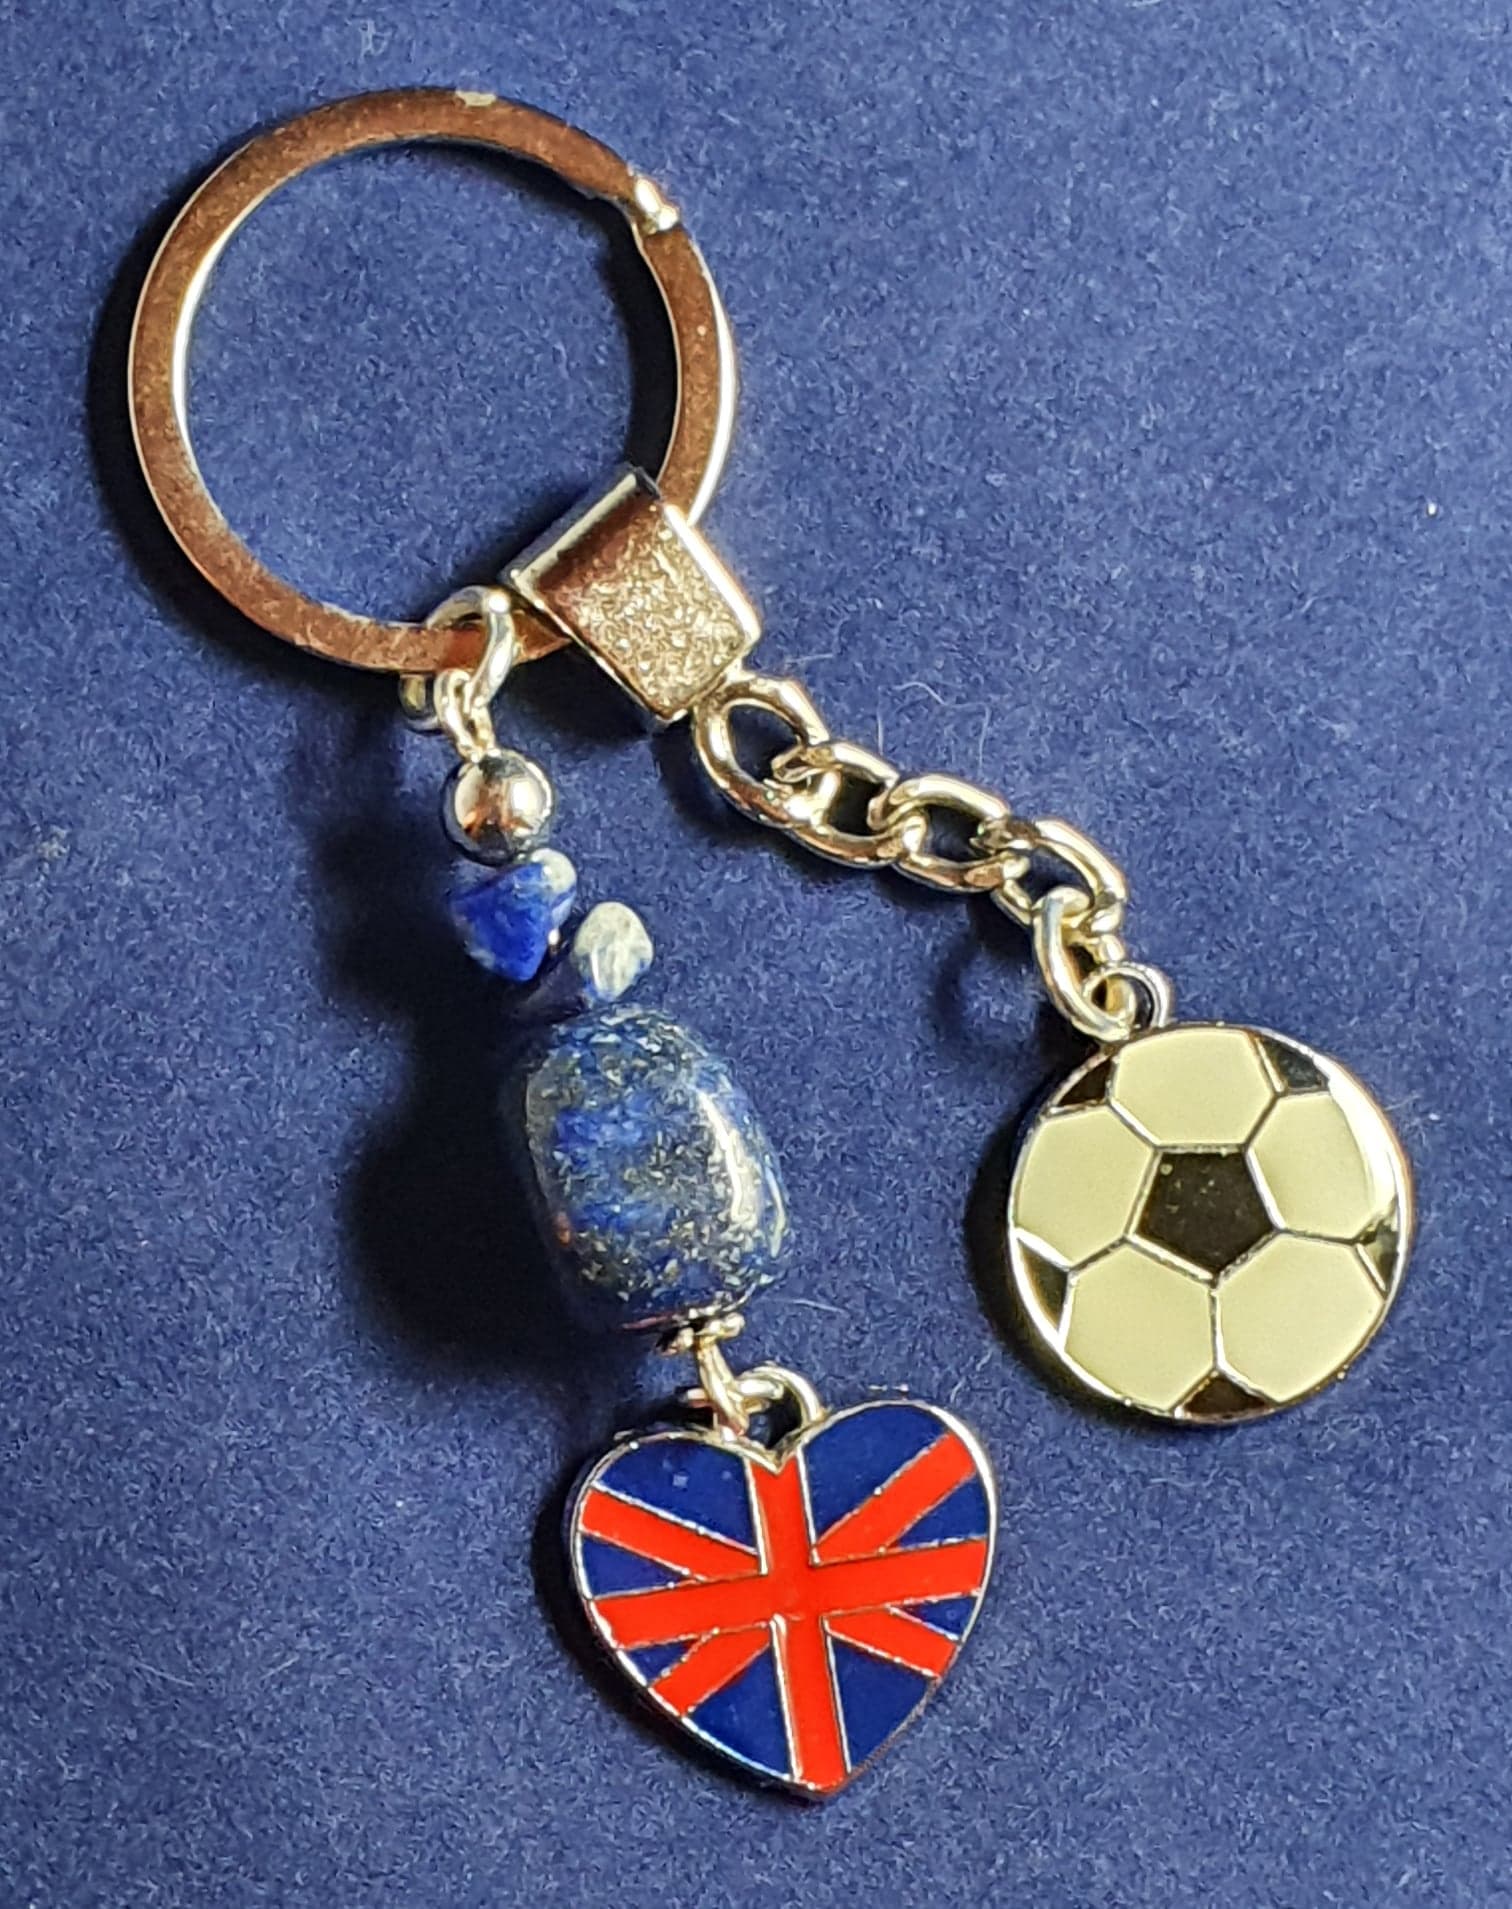 Football theme Key ring with Lapis Lazuli